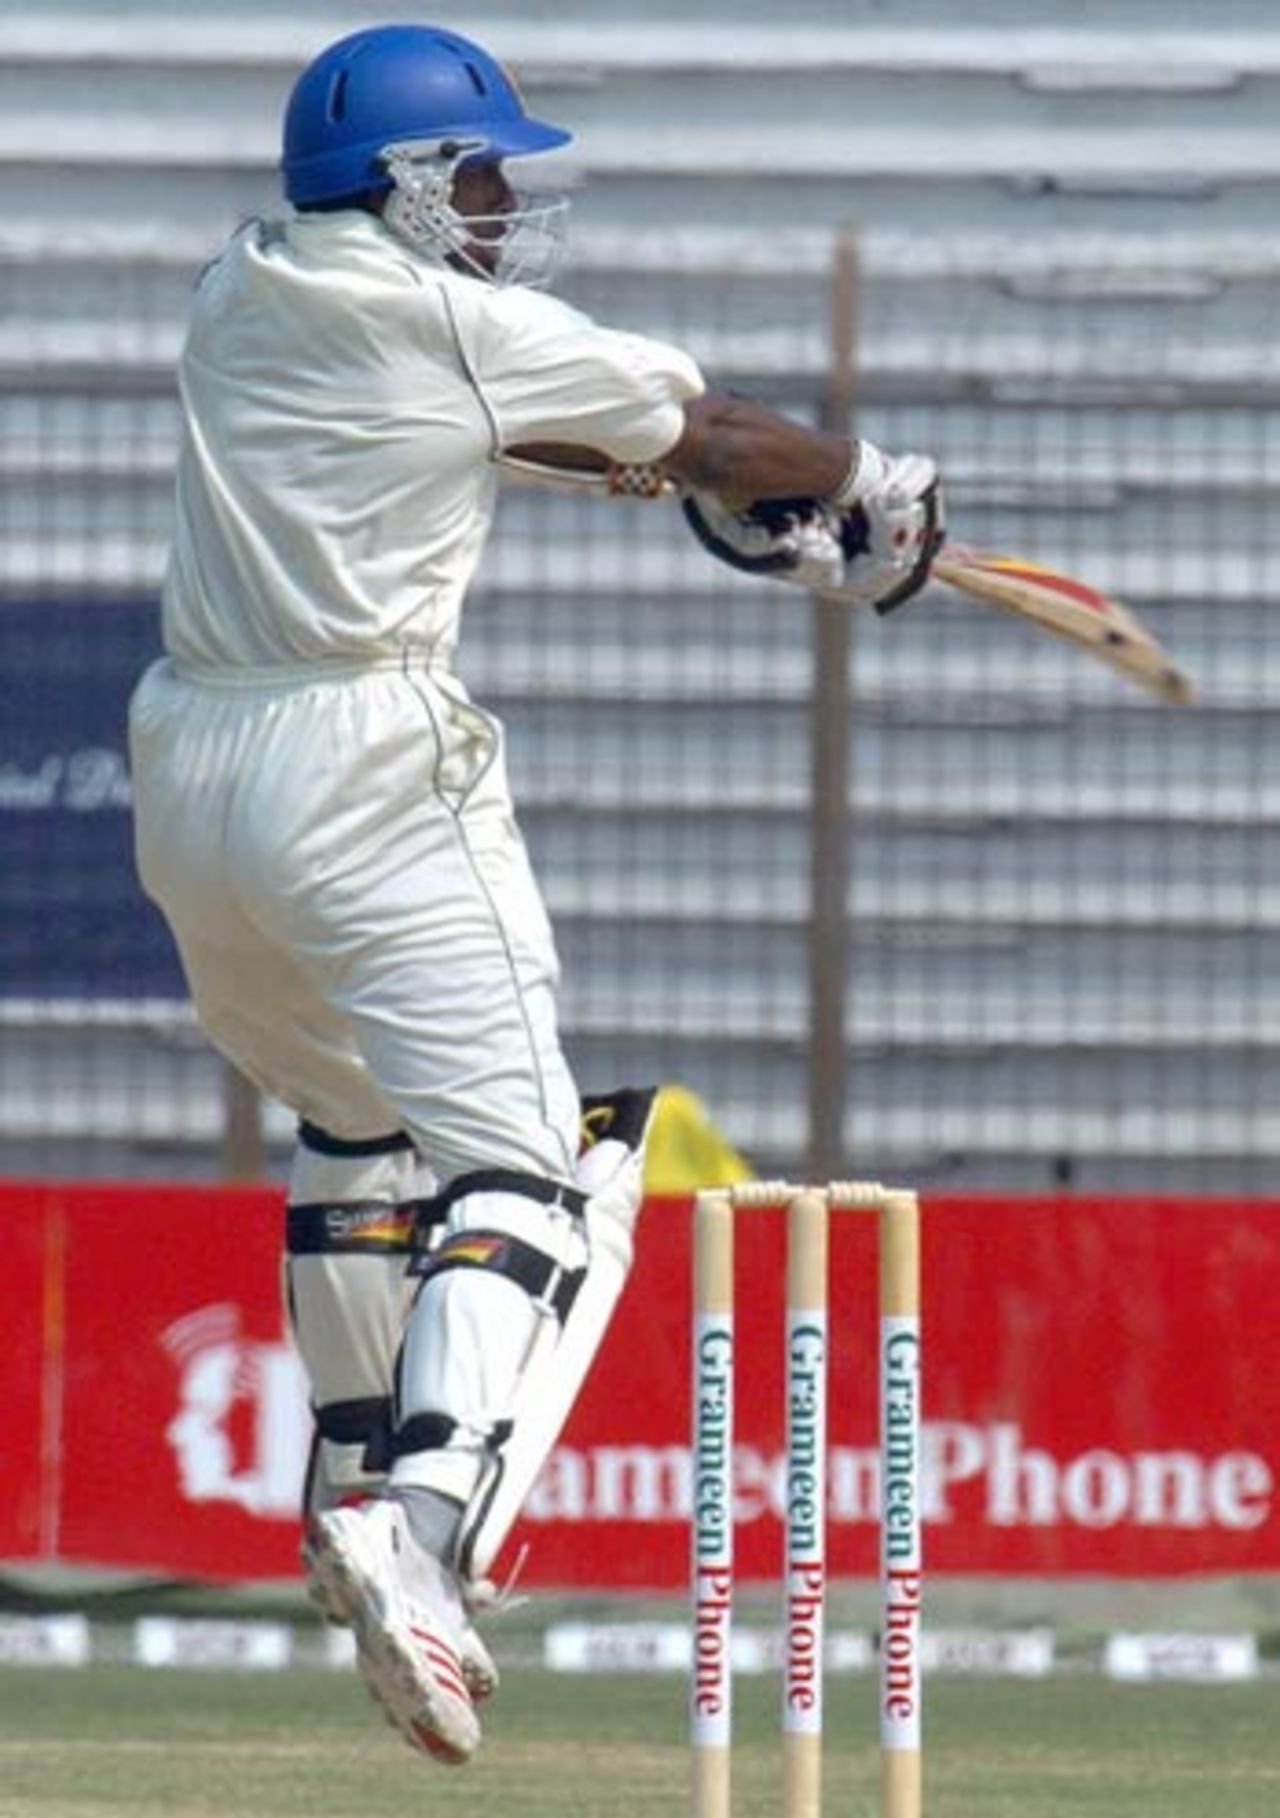 Malinga Bandara shows his batting potential, Bangladesh v Sri Lanka, 1st Test, Chittagong, 3rd day, March 2, 2006